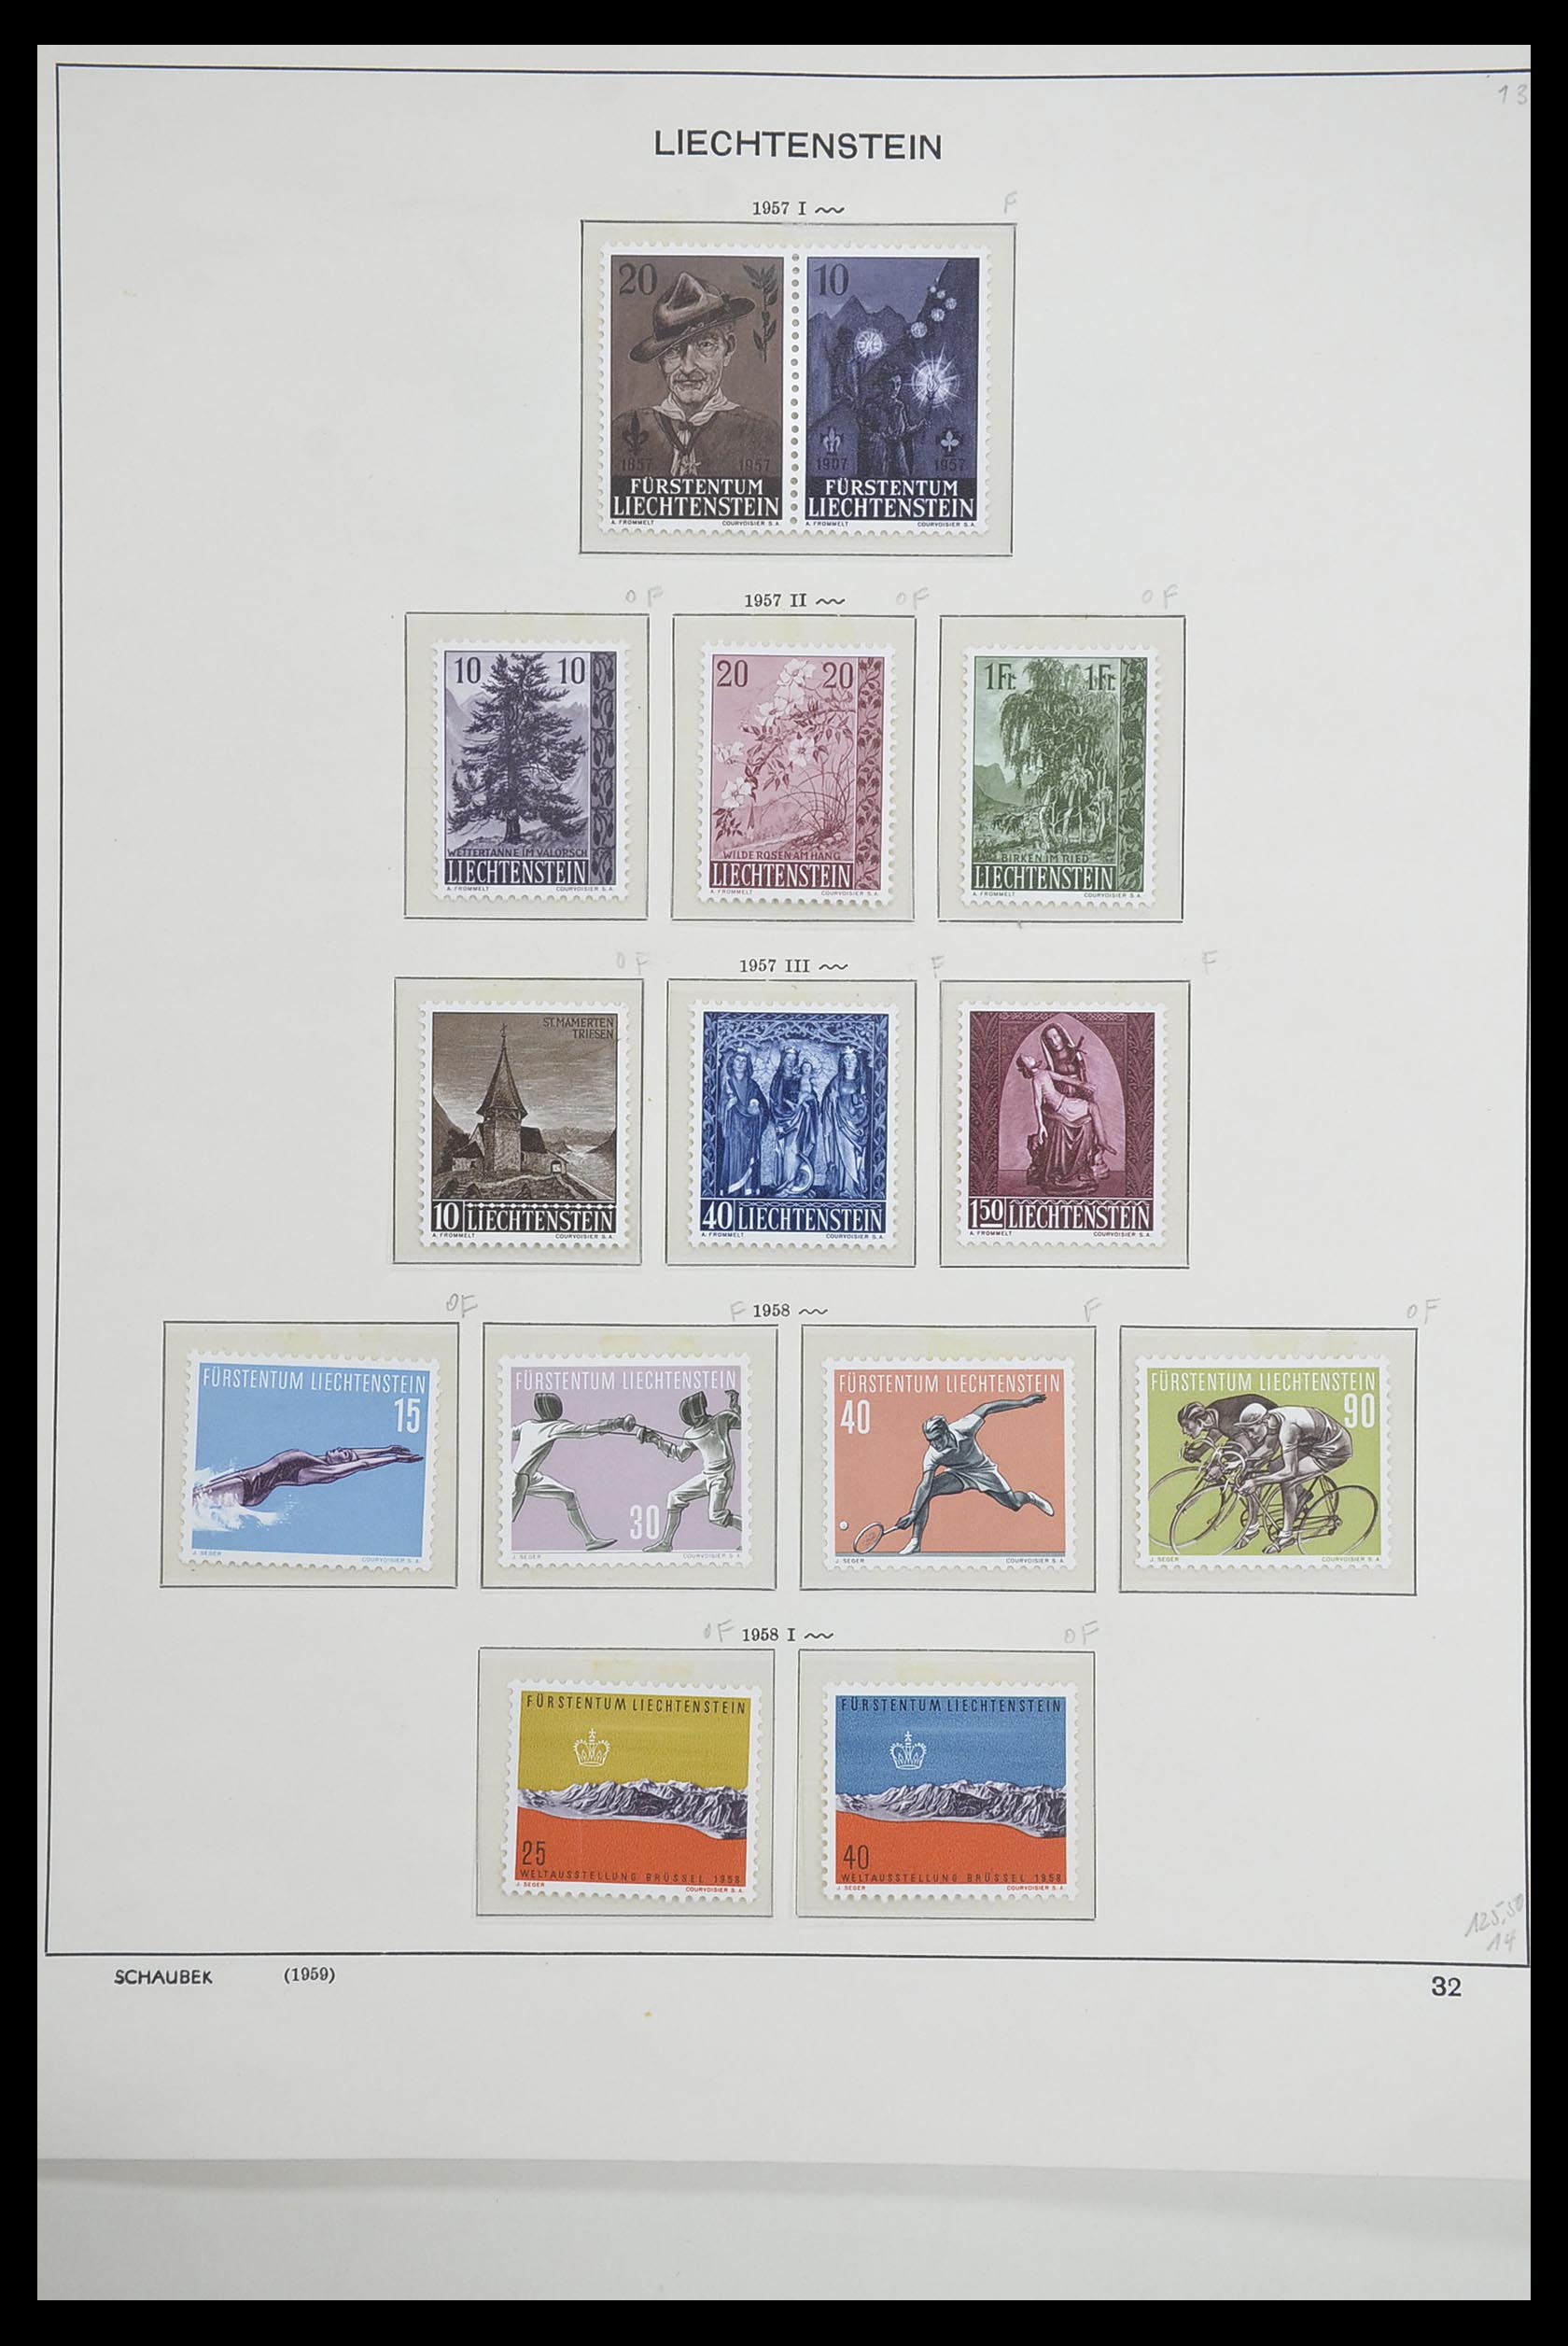 33274 033 - Stamp collection 33274 Liechtenstein 1912-1996.